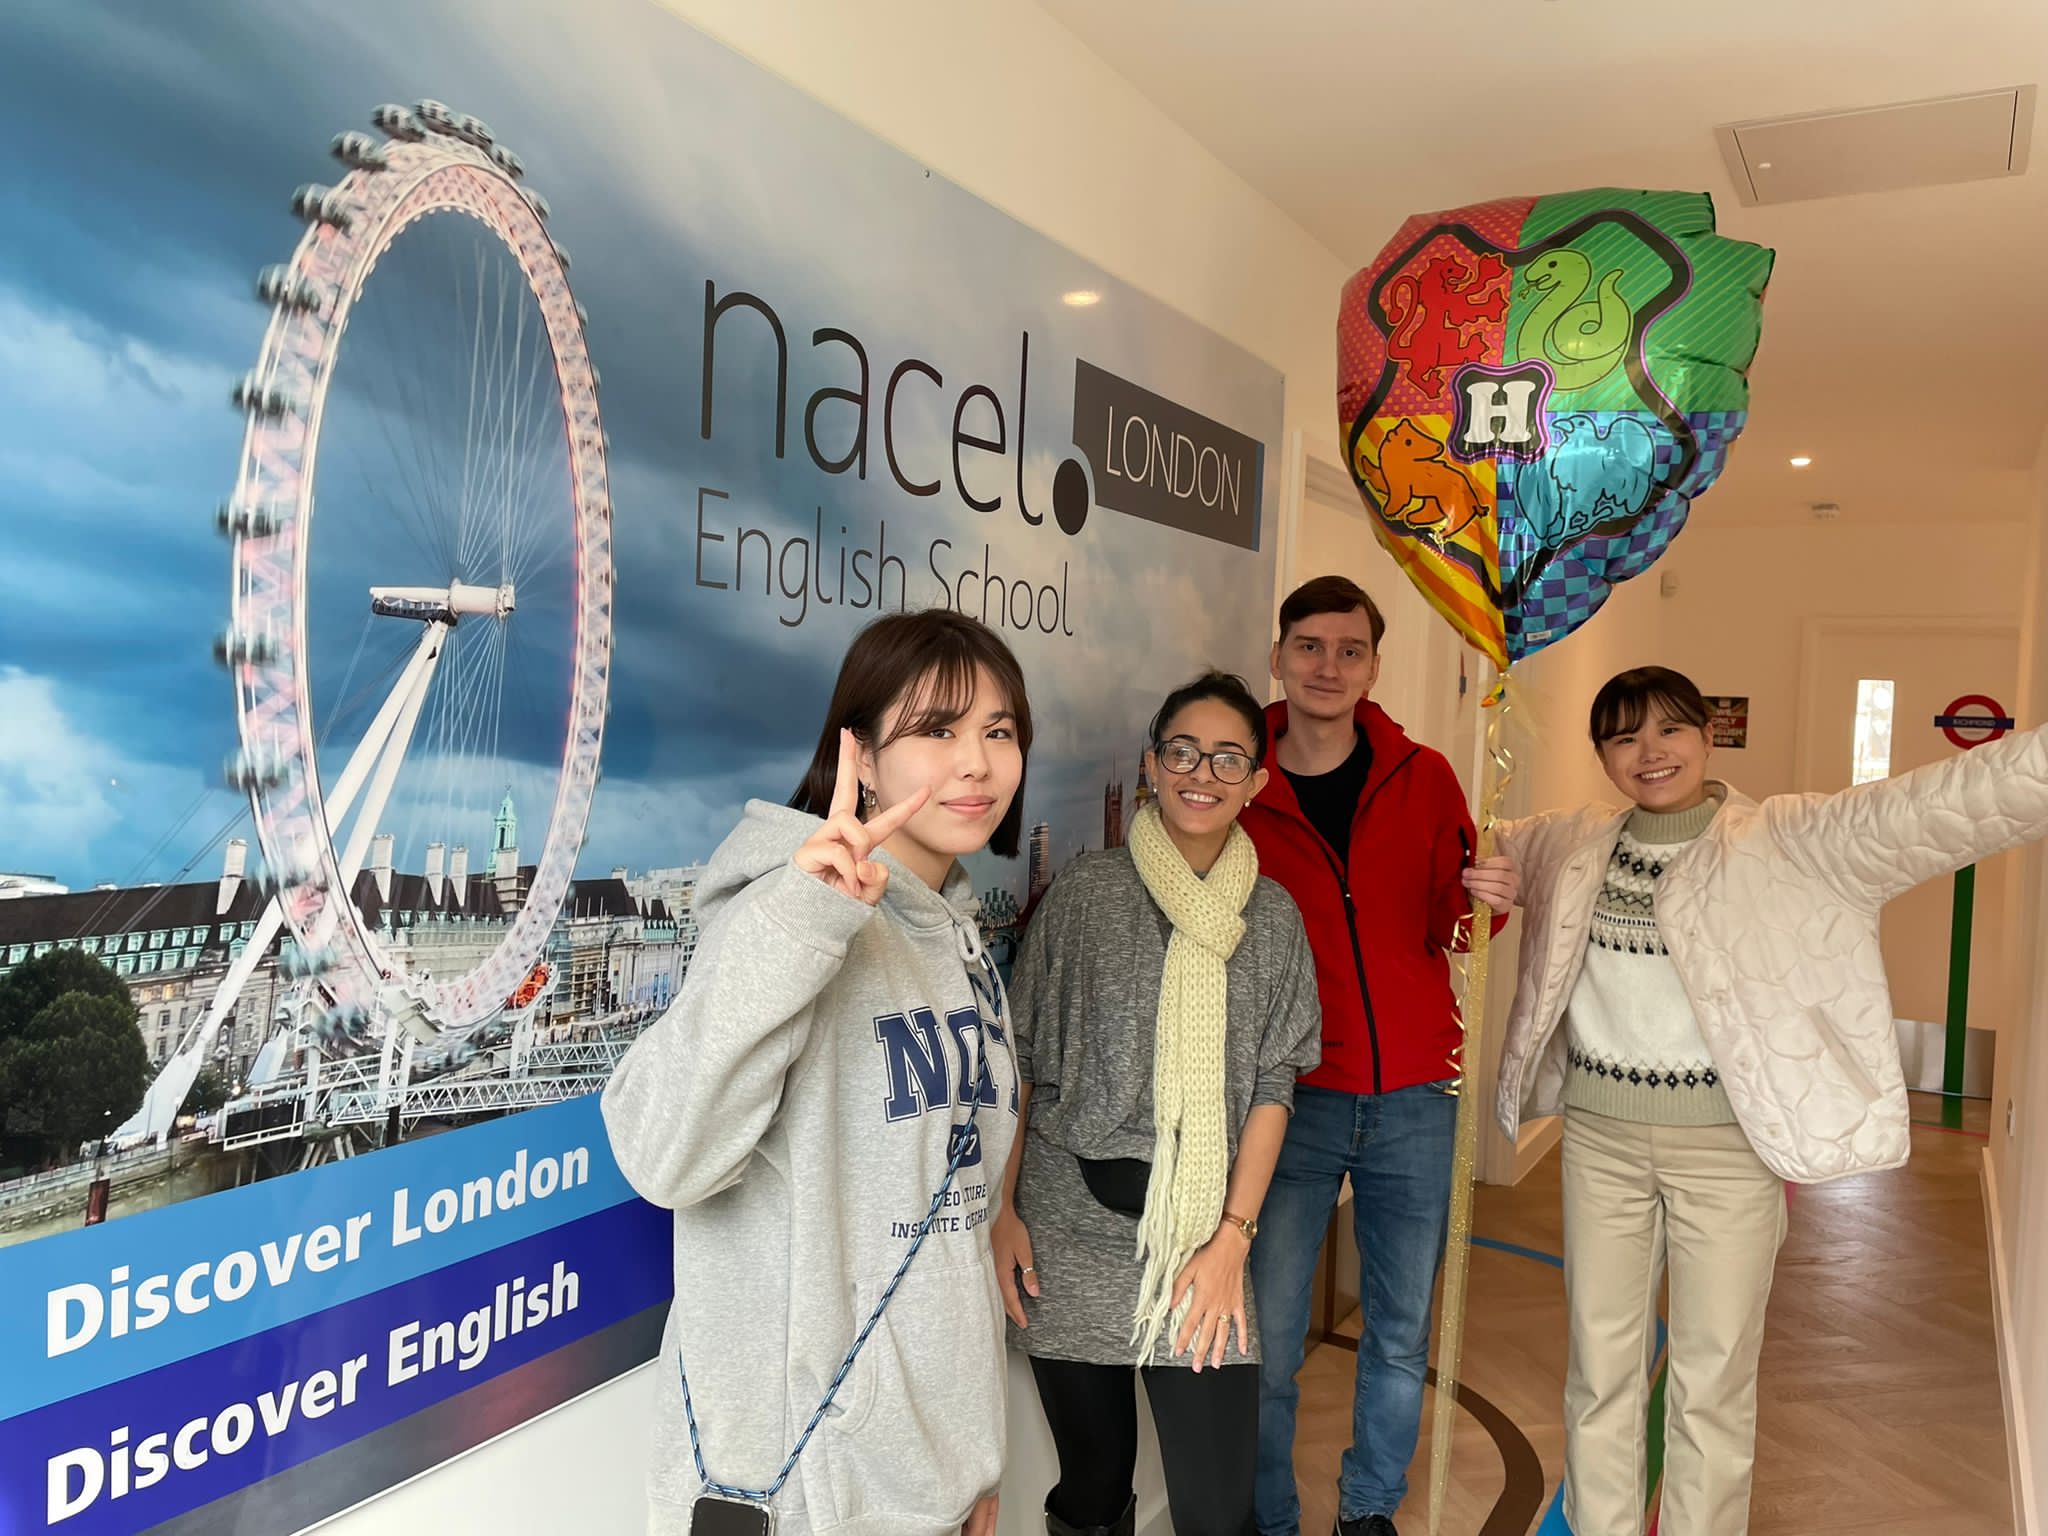 Test TOEFL e IELTS: preparate il vostro test d'inglese presso la scuola d'inglese Nacel di Londra.